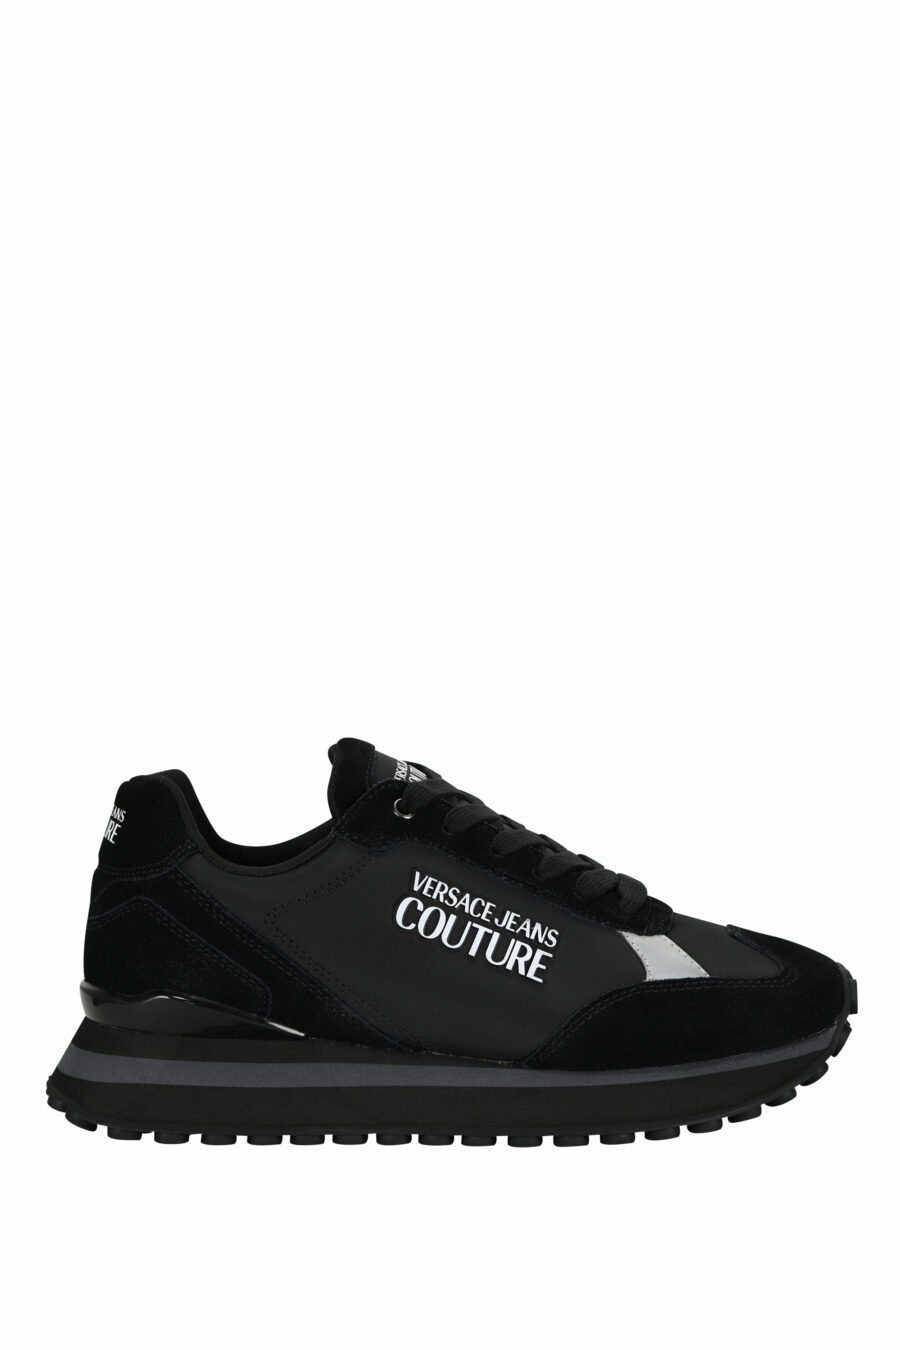 Zapatillas negras mix con minilogo blanco y suela negra - 8052019606362